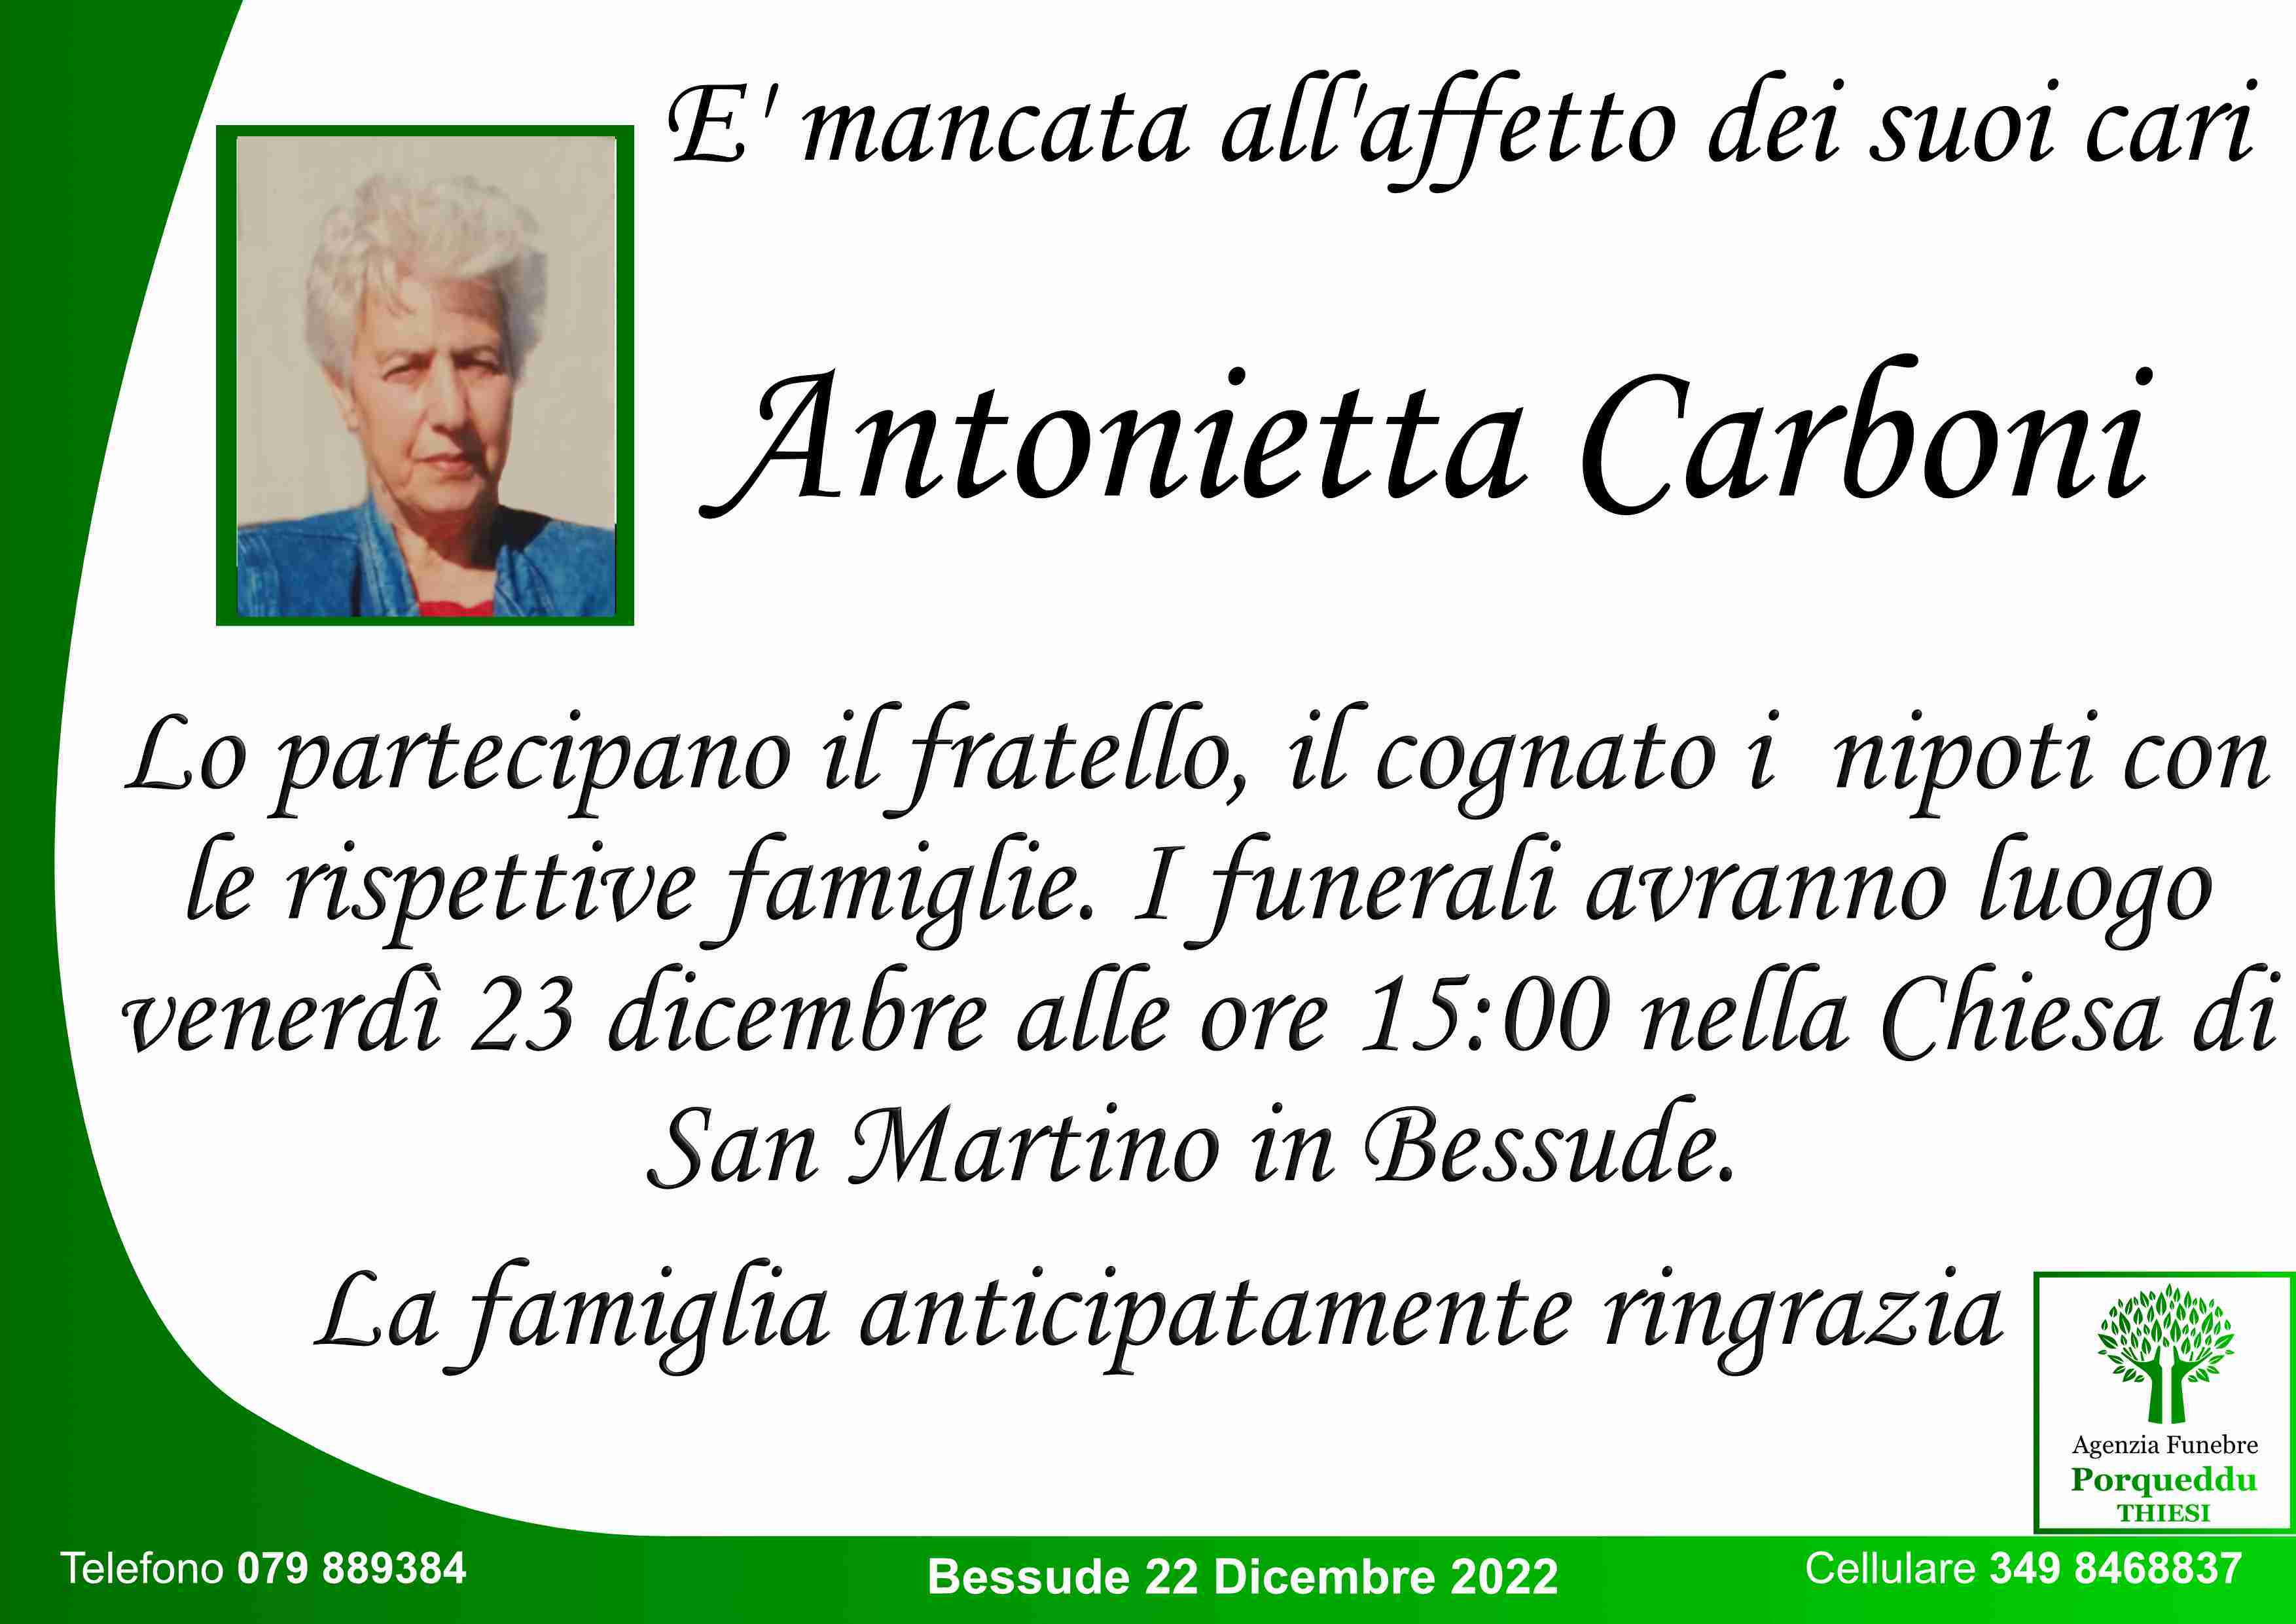 Antonietta Carboni